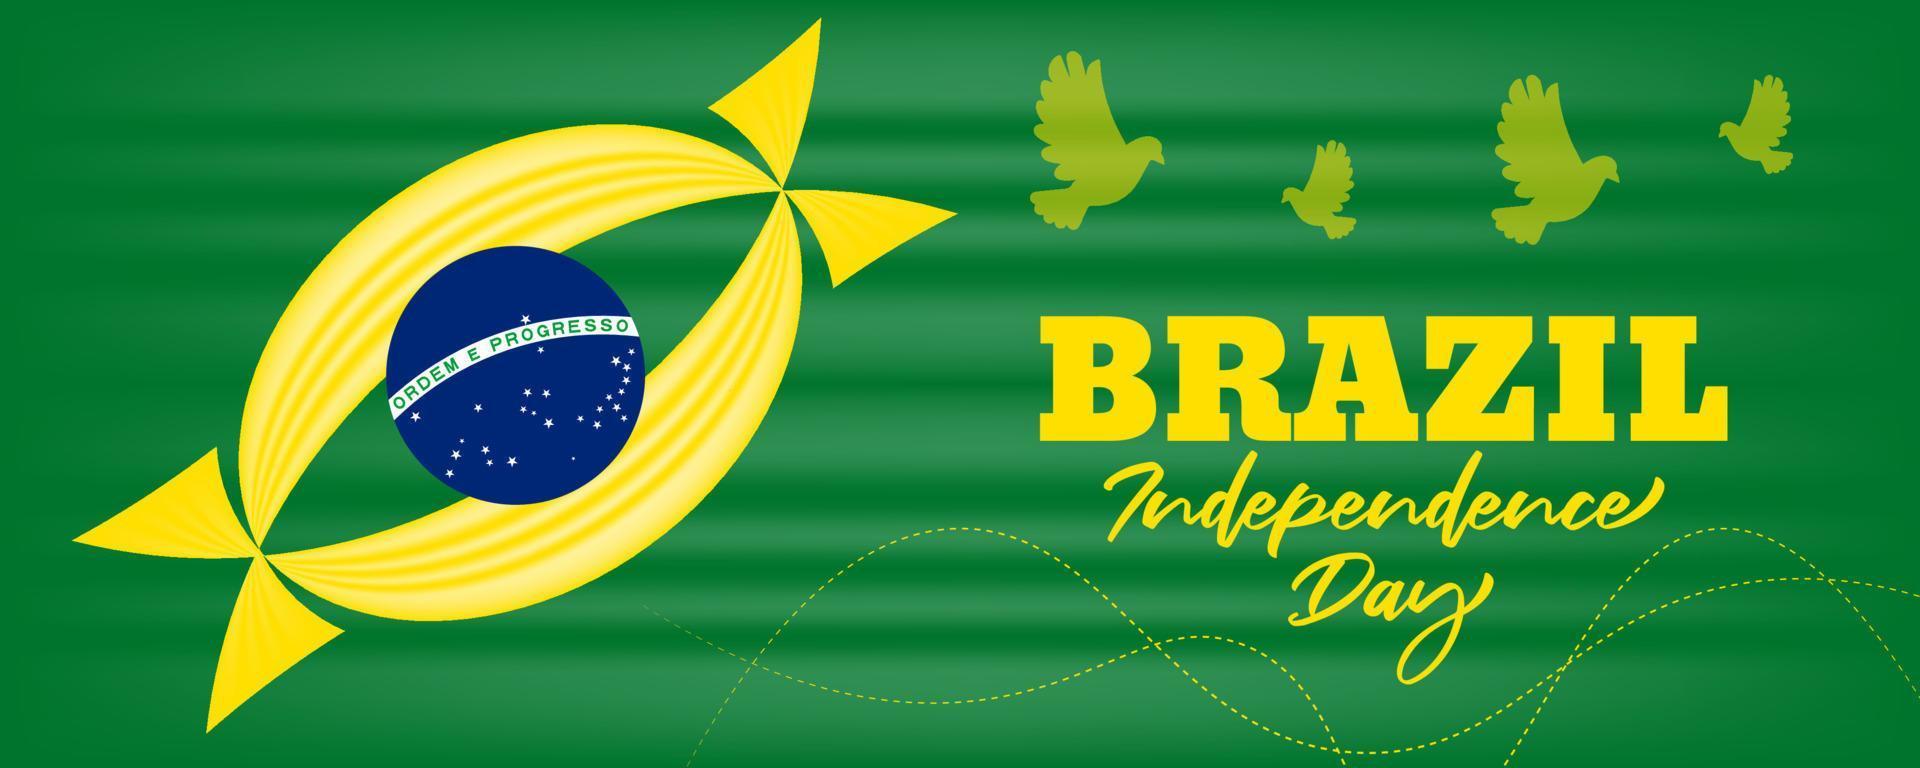 fond de fête de l'indépendance du brésil avec illustration de conception agitant le drapeau du brésil vecteur